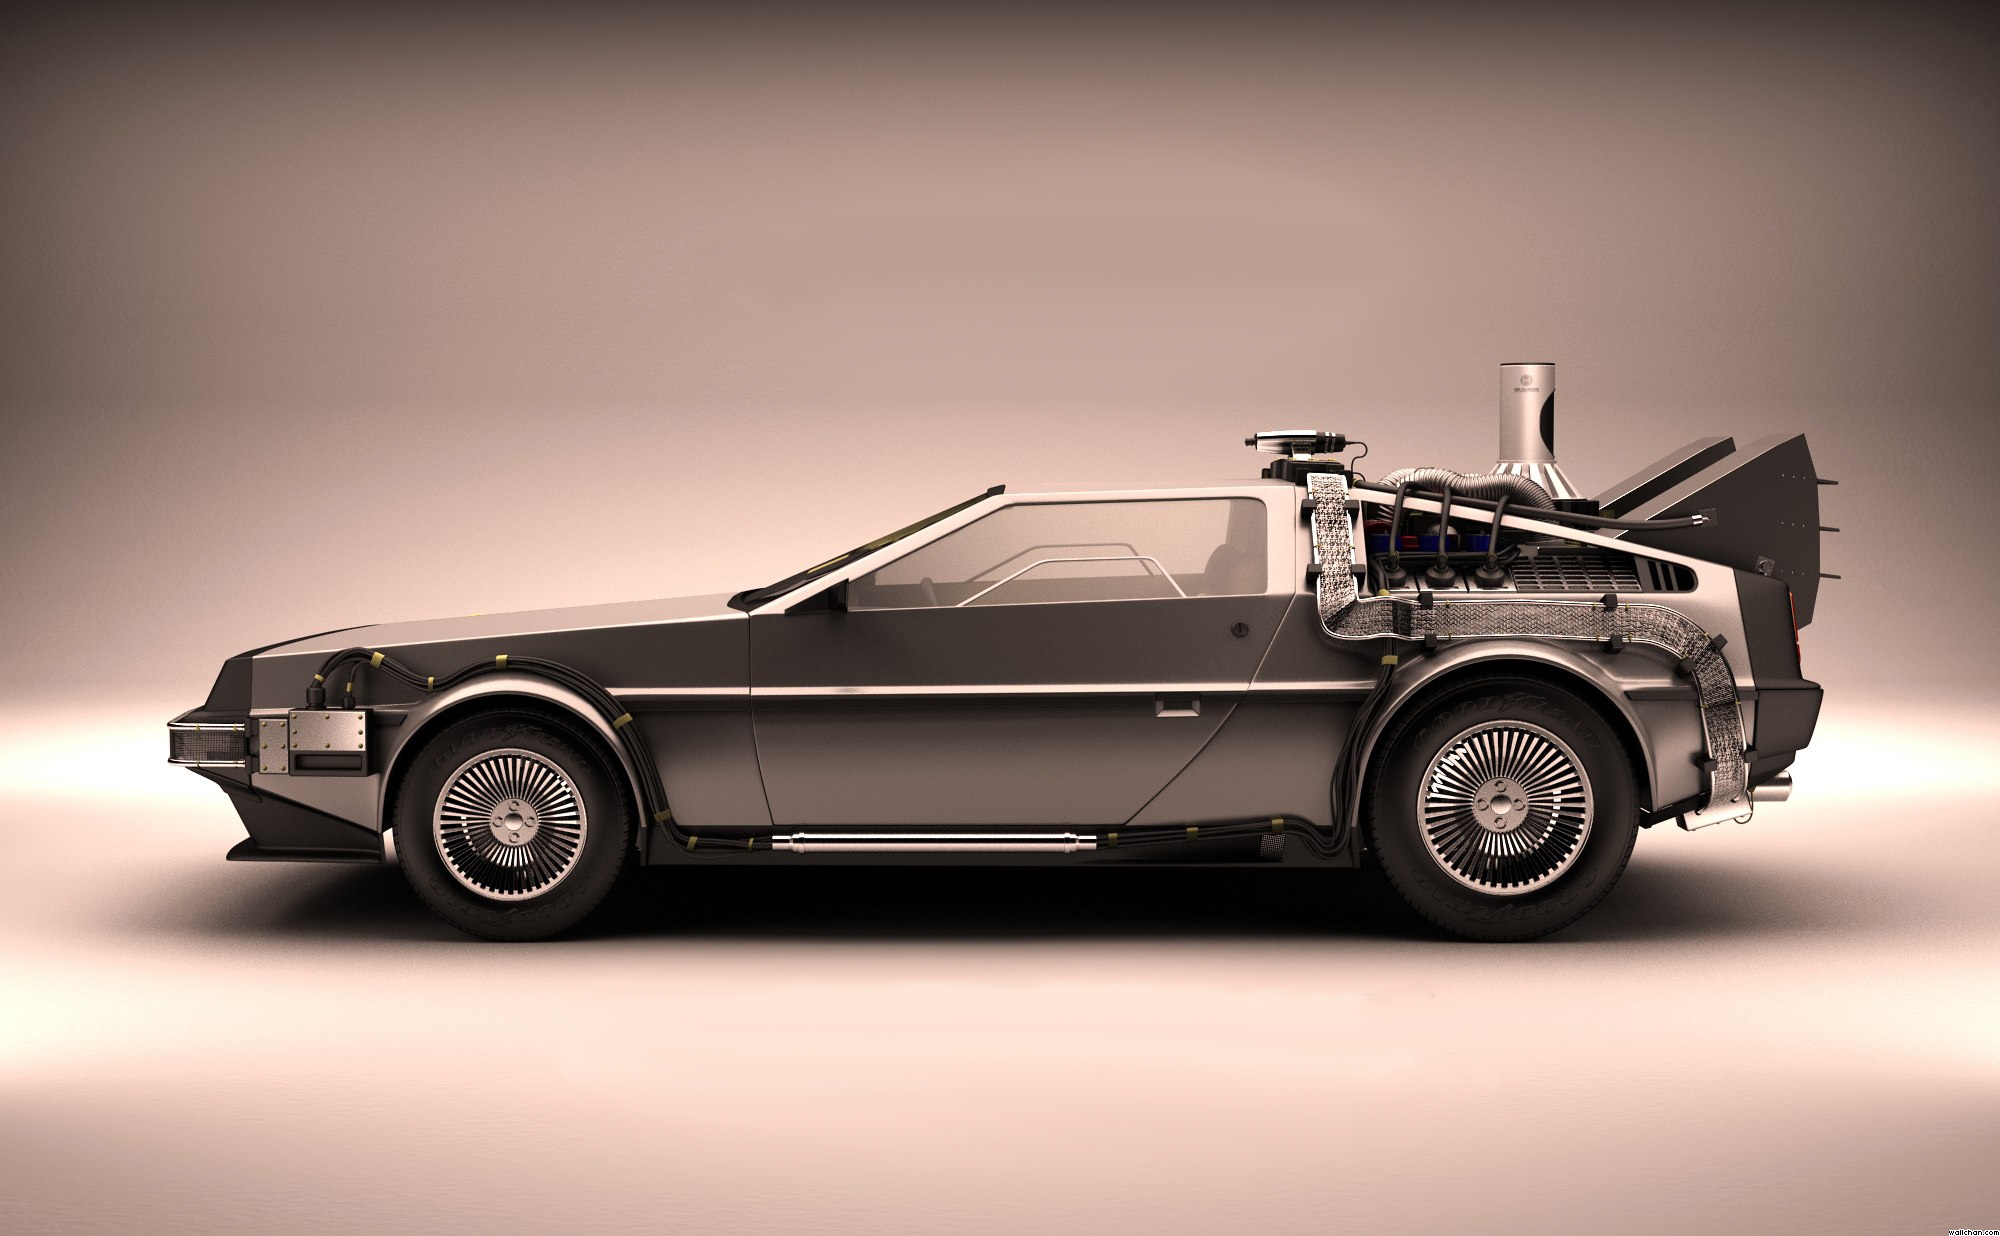 DMC DeLorean Back To The Future The Time Machine Car 2000x1236